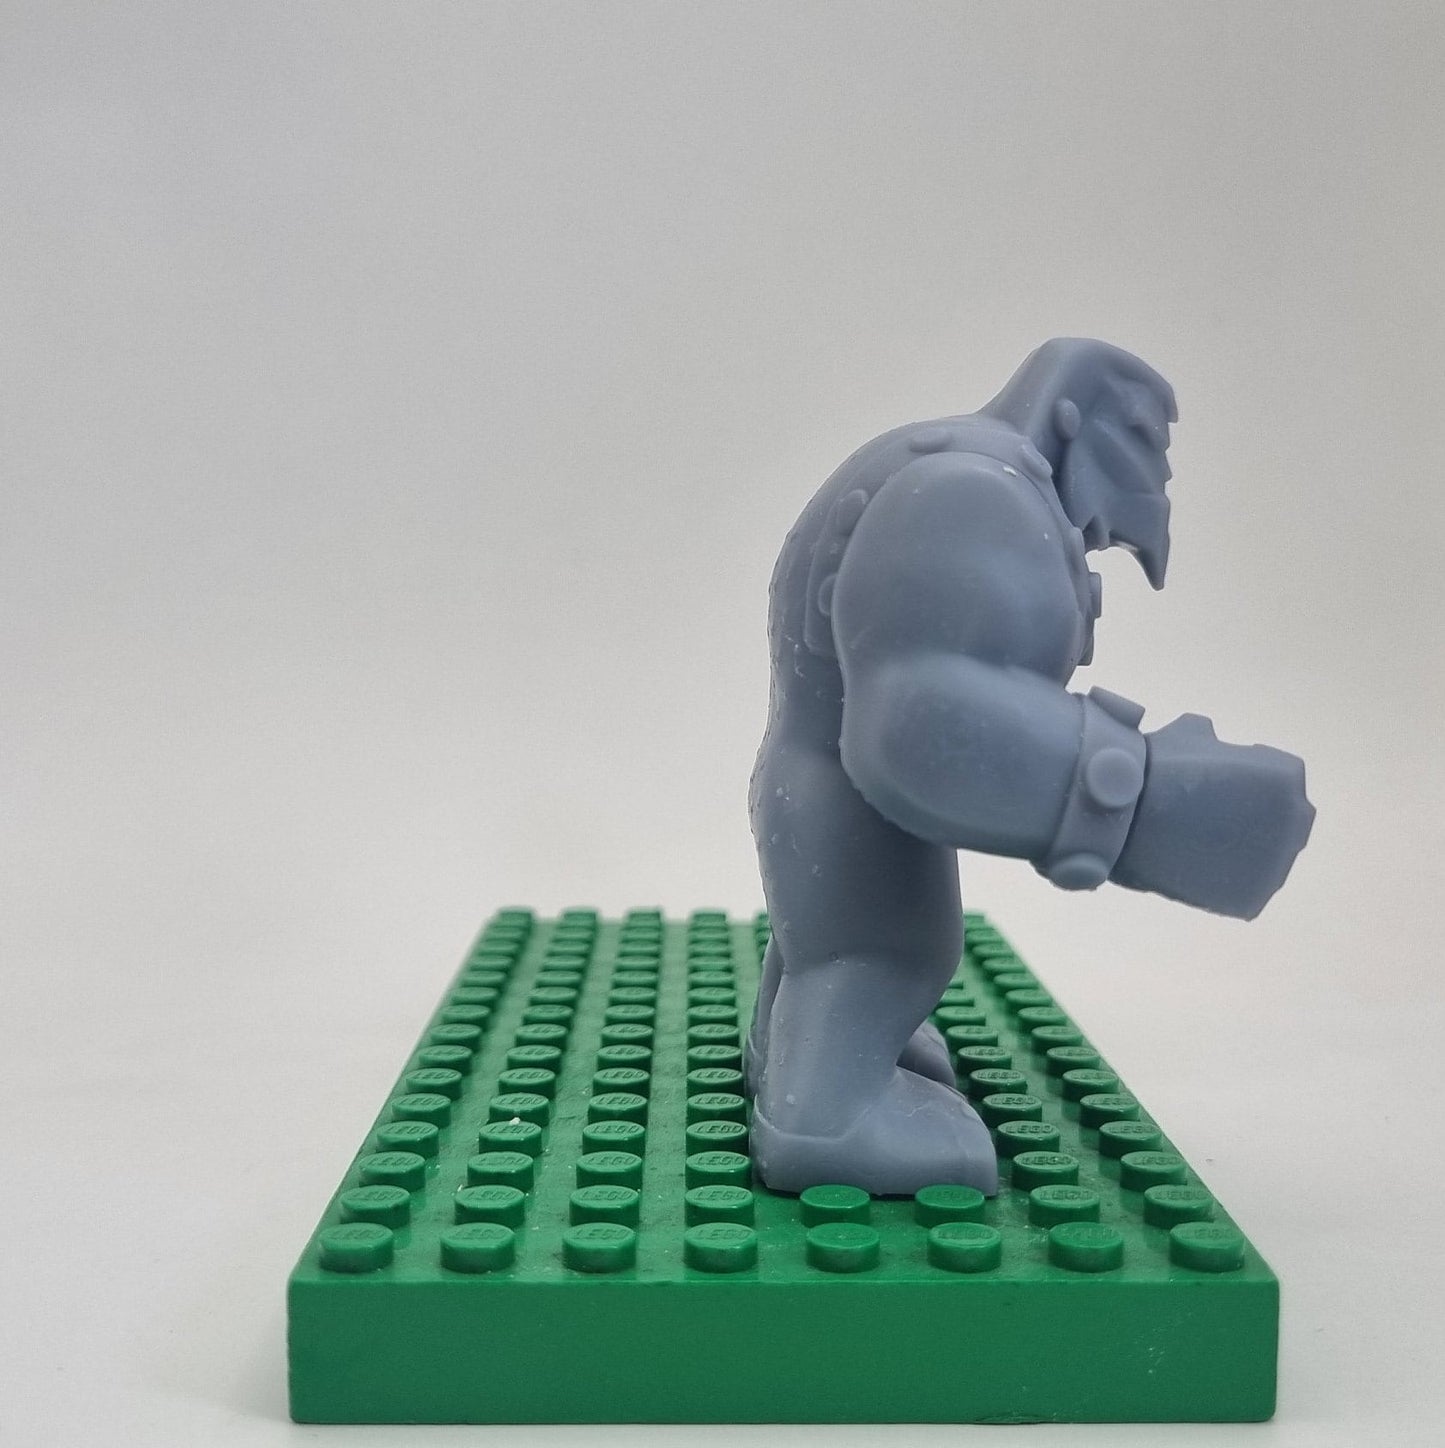 Custom 3D printed building toy teen heroes villain bigfig!